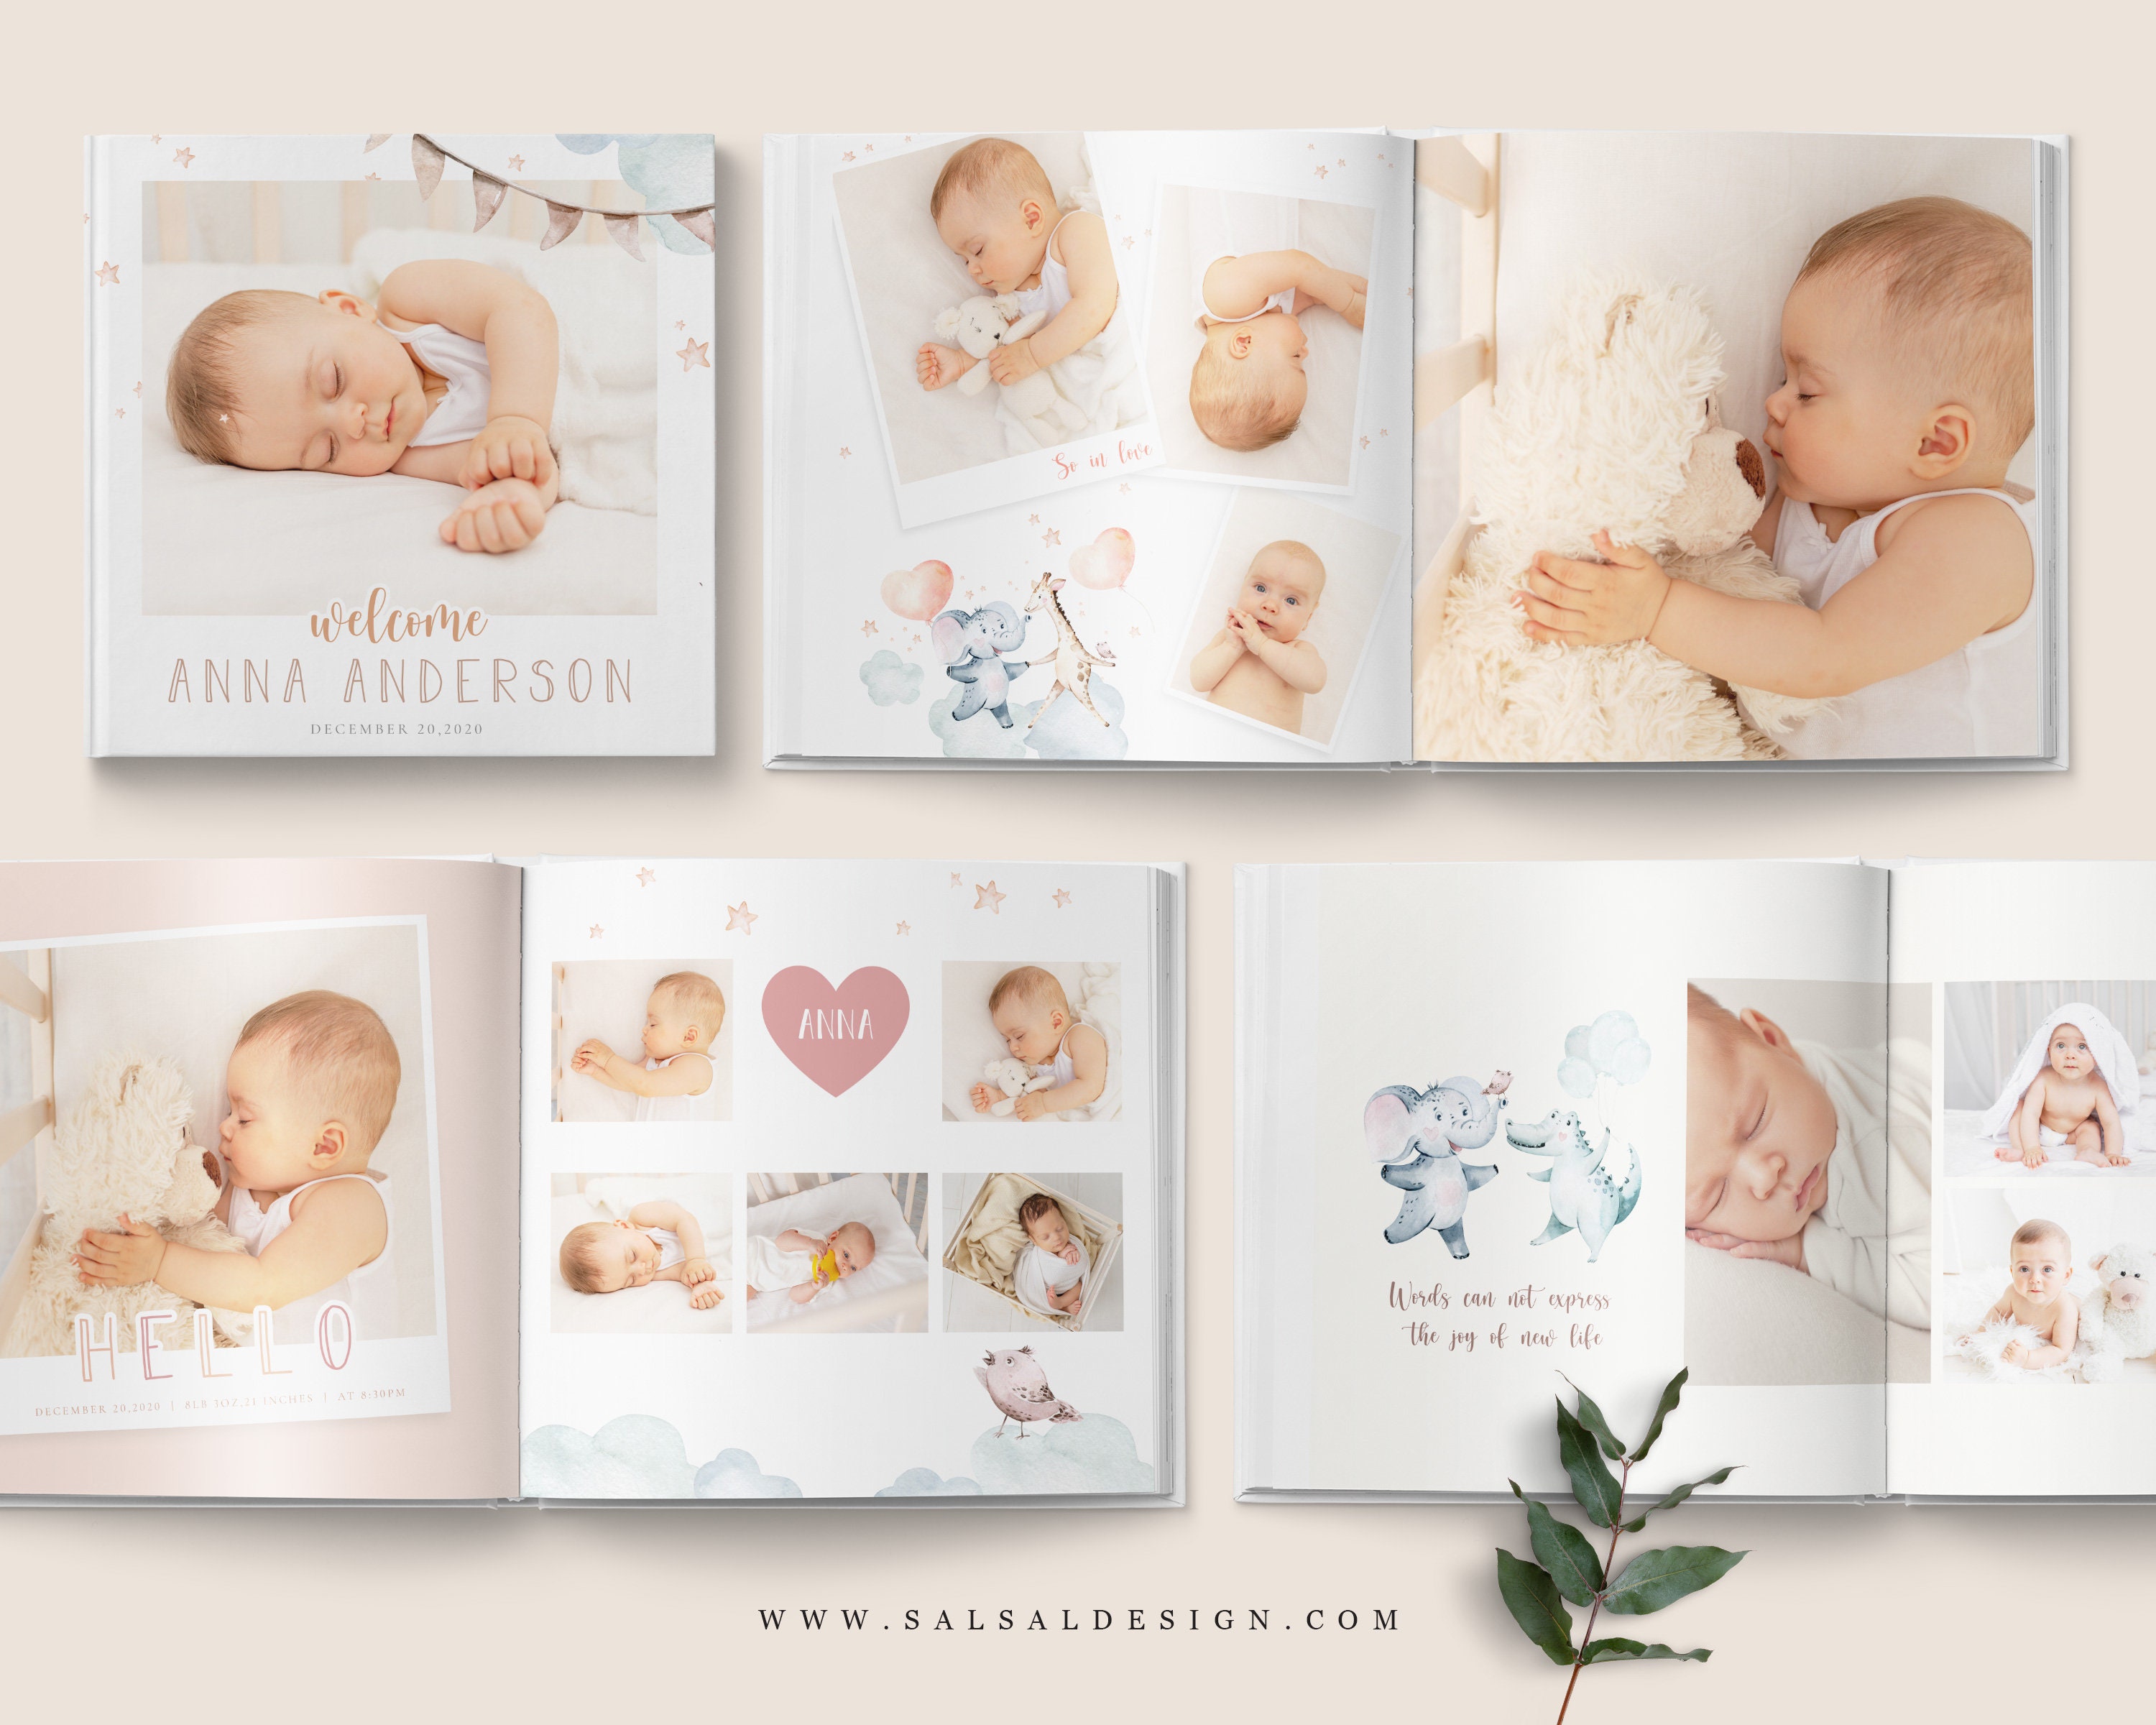 Álbum de fotos de bebé y fotolibro de nacimiento? FlexiLivre